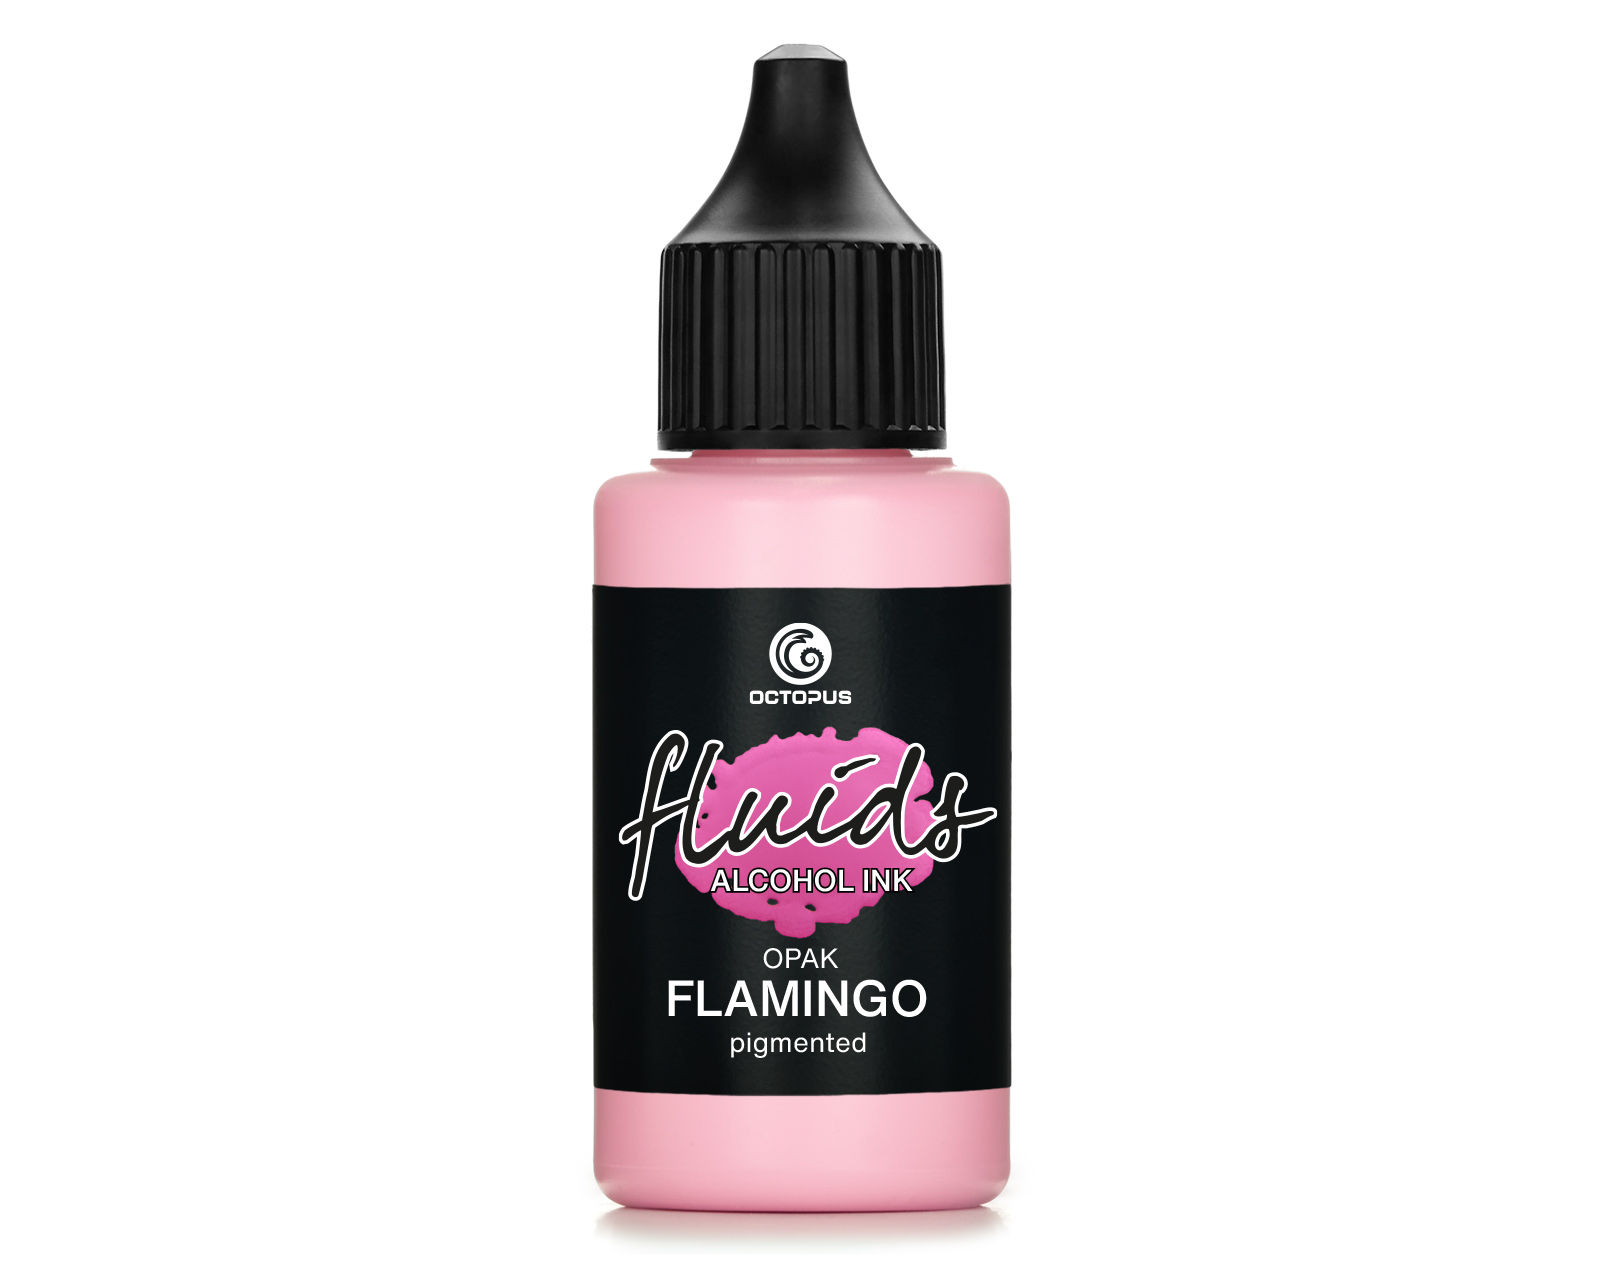 Fluids Alcohol Ink OPAK FLAMINGO, Inchiostro ad alcohol per Fluid Art e Resin Art, rosa